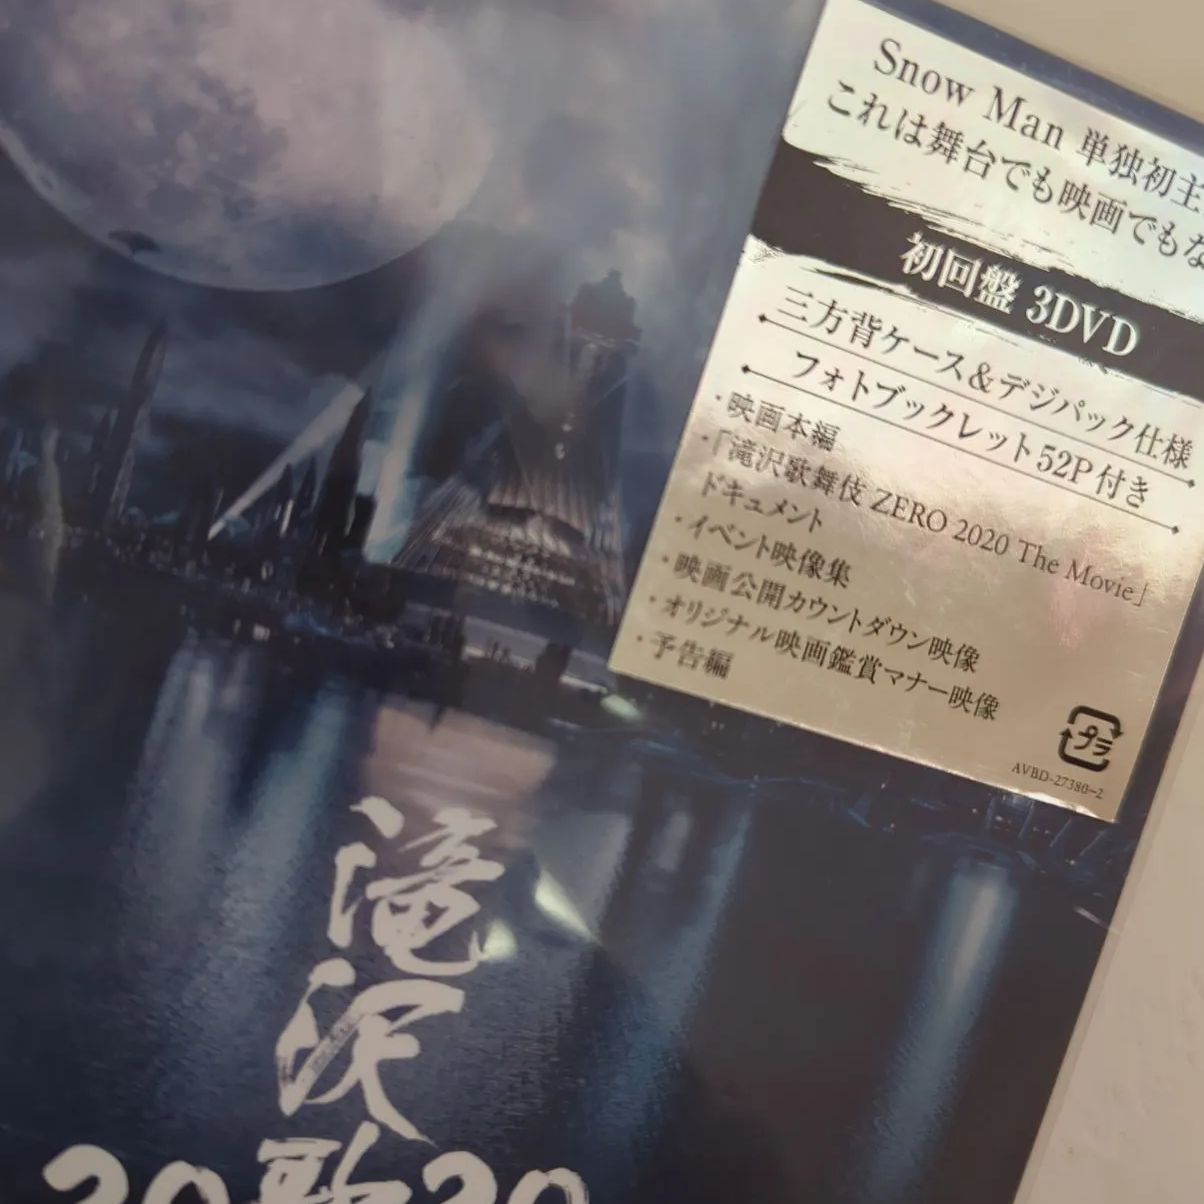 公式ストア 滝沢歌舞伎ZERO2020初回盤・2枚組 Blu-ray- Movie 美品 